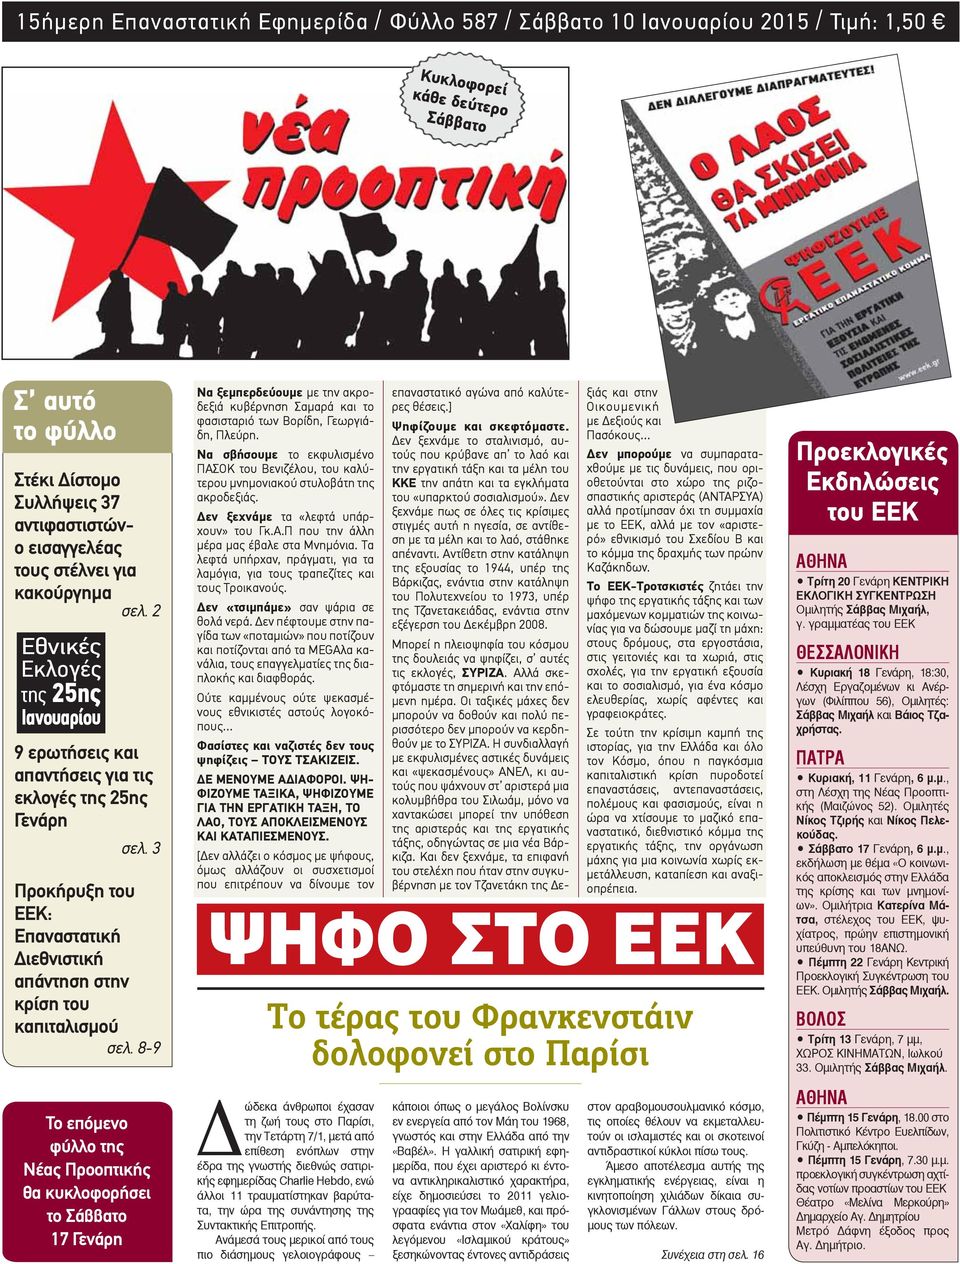 3 Προκήρυξη του ΕΕΚ: Επαναστατική Διεθνιστική απάντηση στην κρίση του καπιταλισμού σελ.